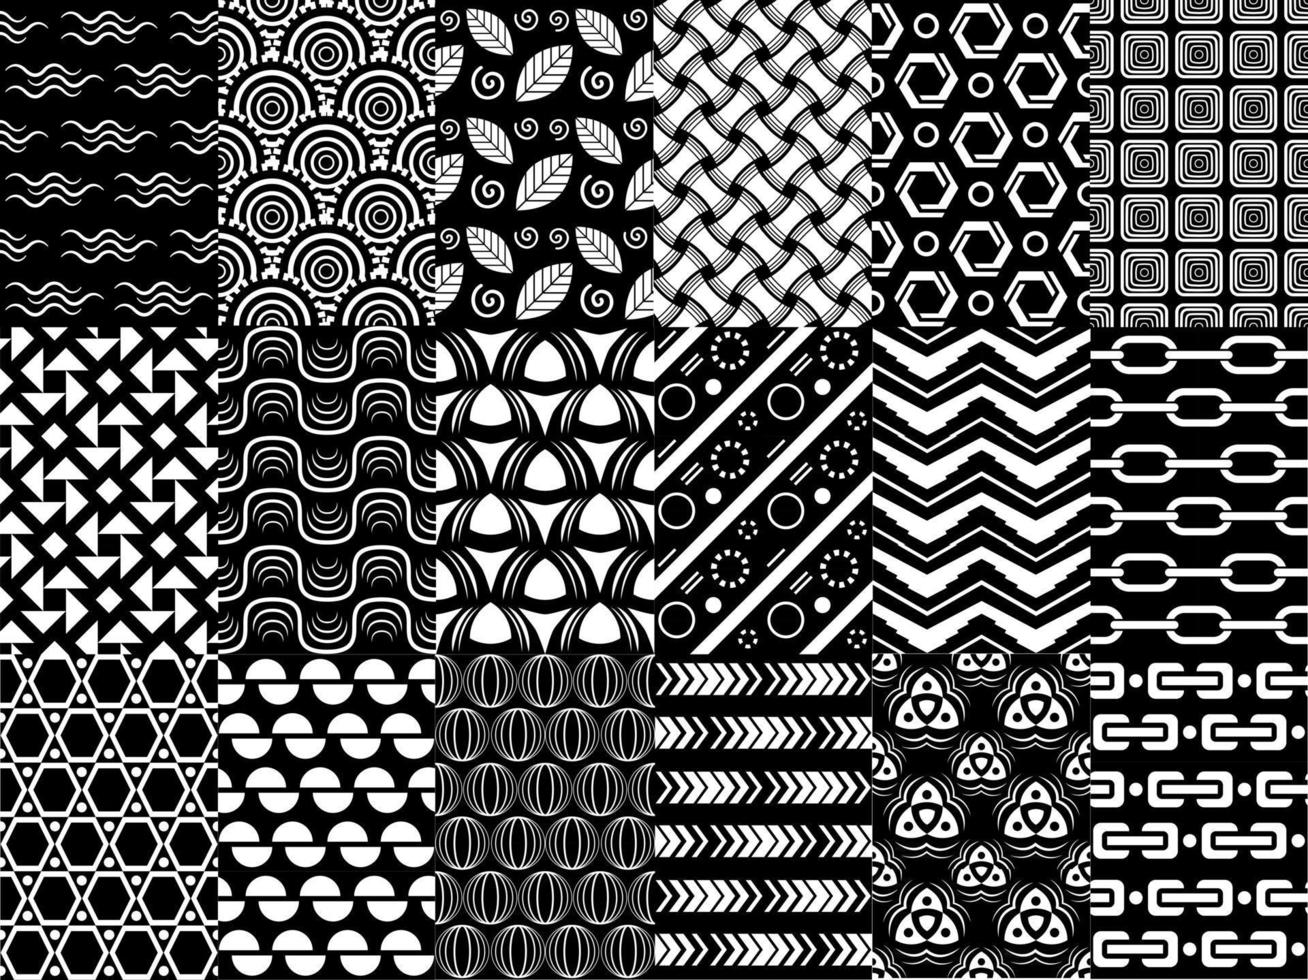 Vektor-Schwarz-Weiß-Mustersatz, Sammlung von geometrischen monochromen Mustern, für Ihre Designprojekte als Tapete, Textil, Stoff, Verpackung, Cover-Design vektor